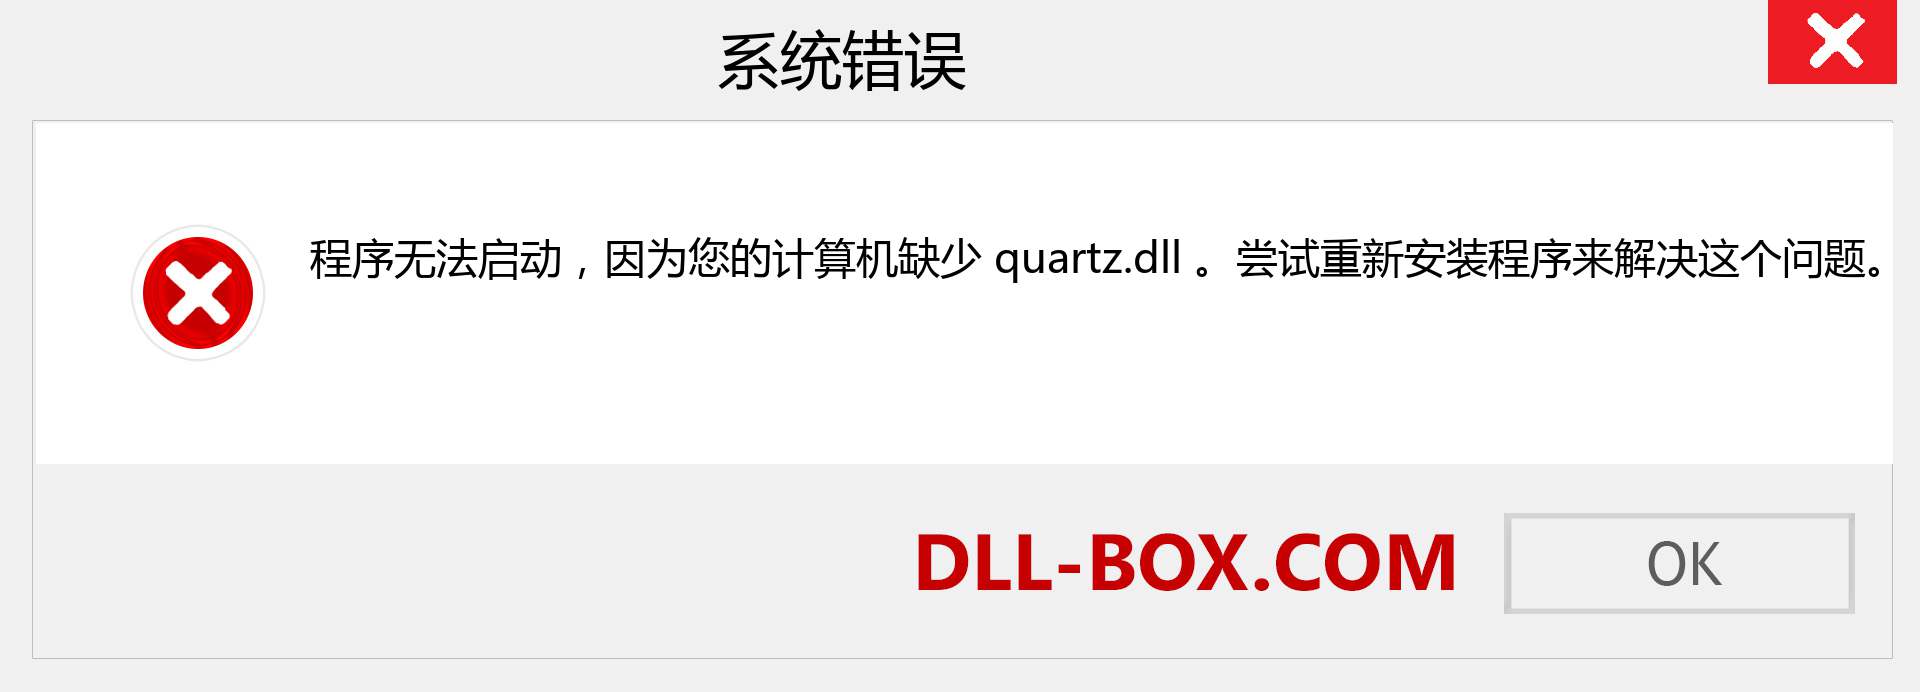 quartz.dll 文件丢失？。 适用于 Windows 7、8、10 的下载 - 修复 Windows、照片、图像上的 quartz dll 丢失错误